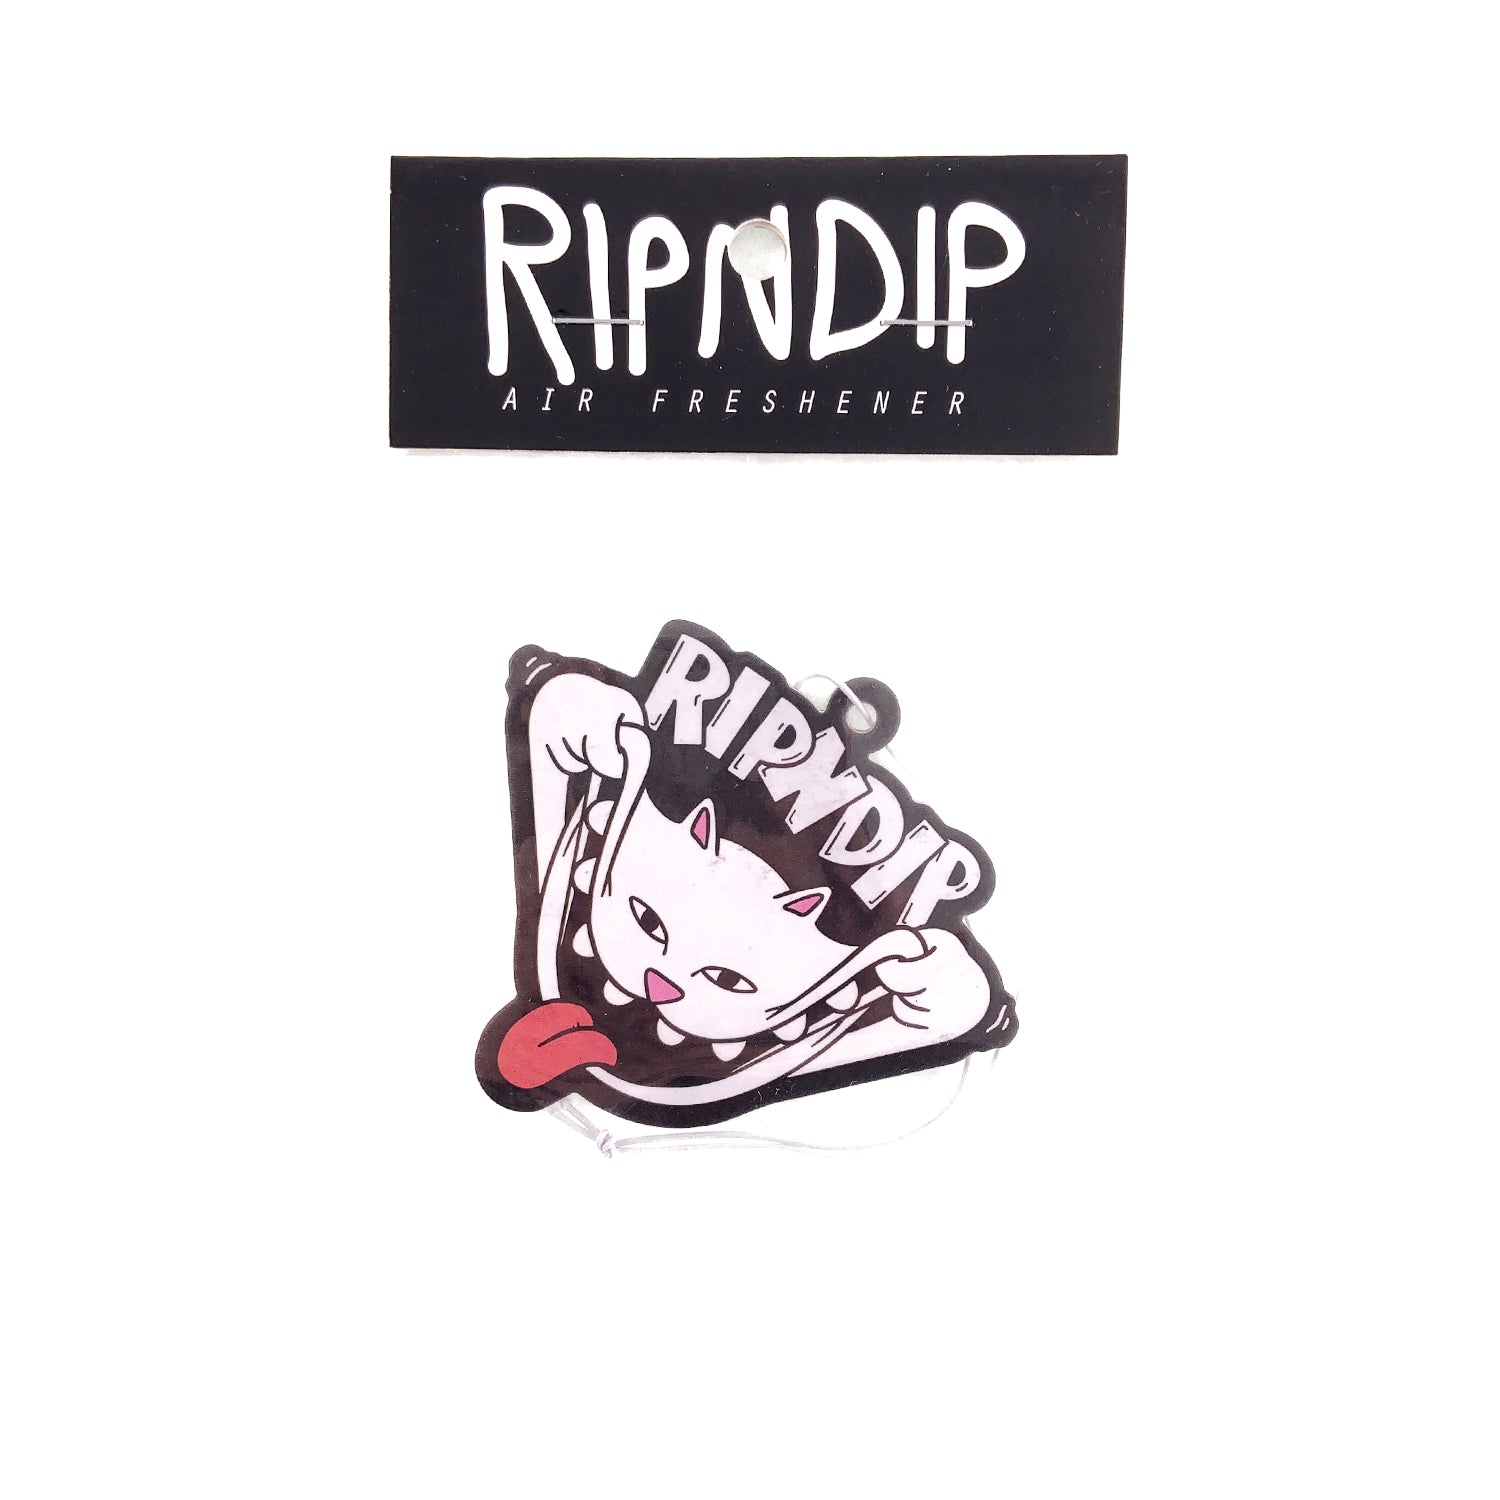 RIPNDIP - Big Smile Air Freshener - Prime Delux Store